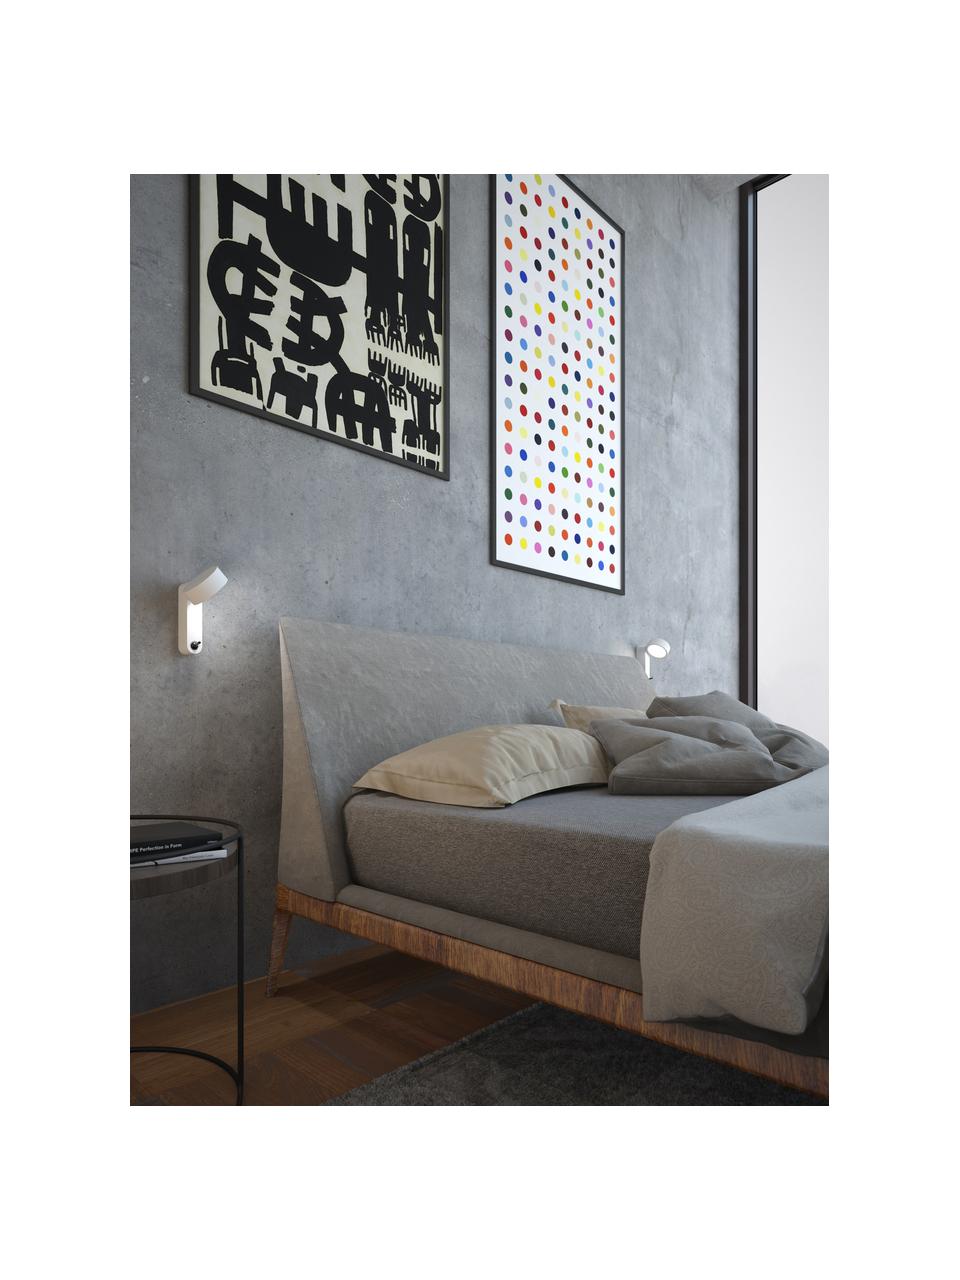 Kleine LED-Wandleuchte Toggle mit verstellbarem Lampenschirm, Aluminium, lackiert, Weiß, matt, B 10 x H 17 cm